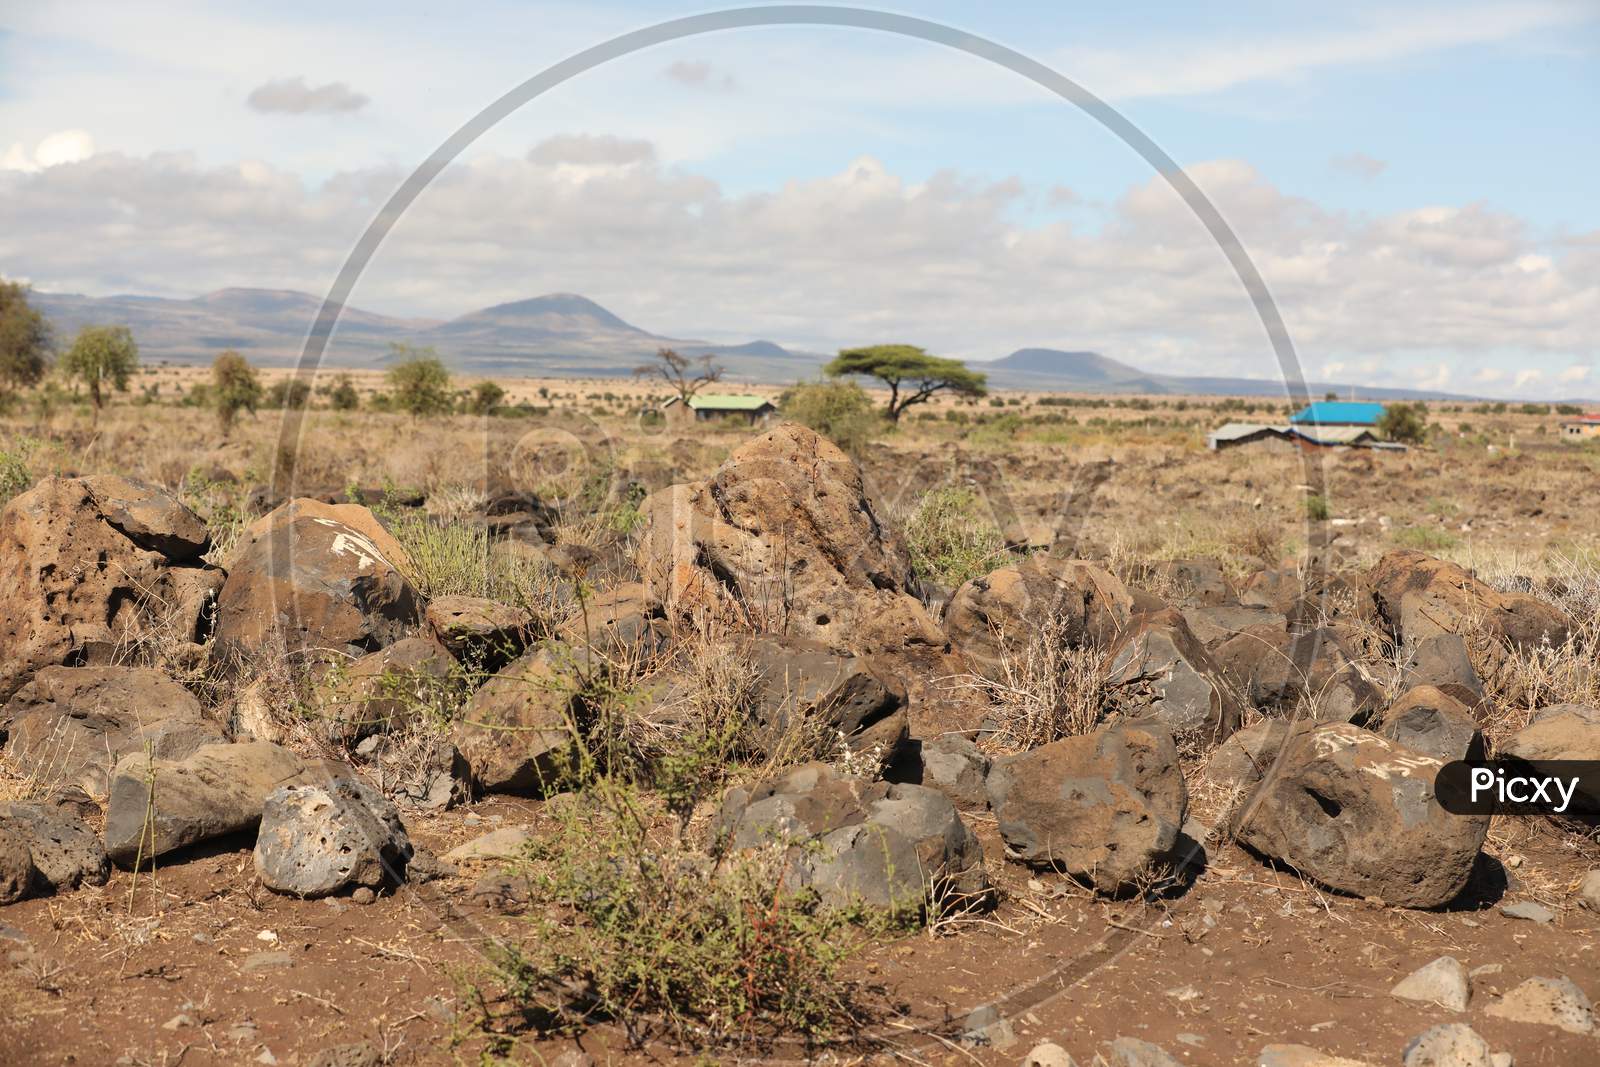 Rocks or Stones In Masai Mara National Reserve, Kenya